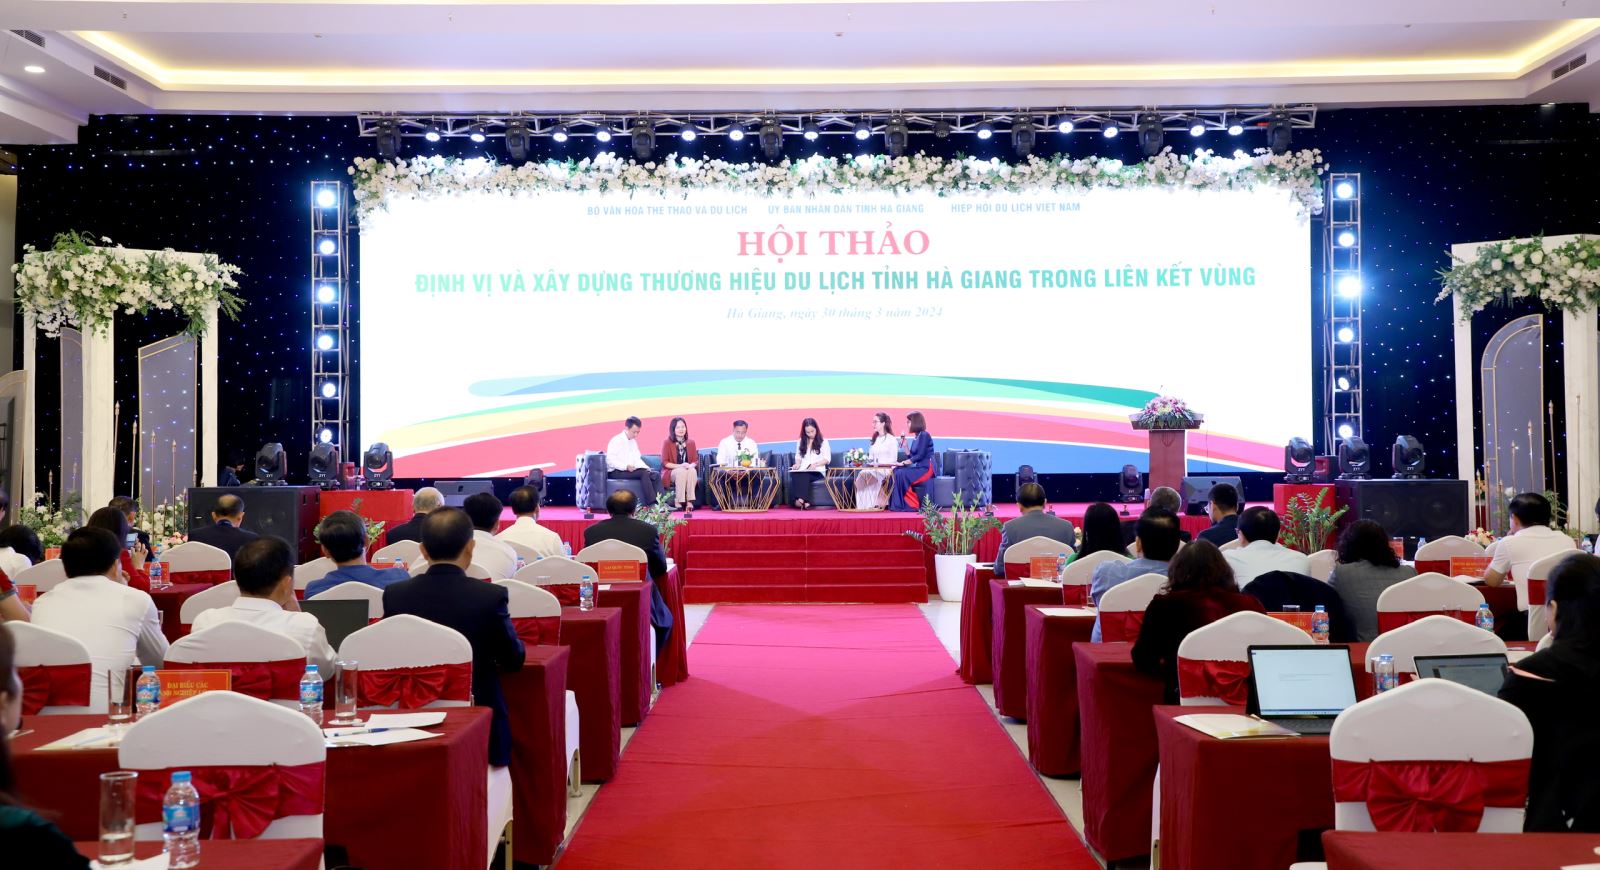 “Định vị và xây dựng thương hiệu du lịch tỉnh Hà Giang trong liên kết vùng”